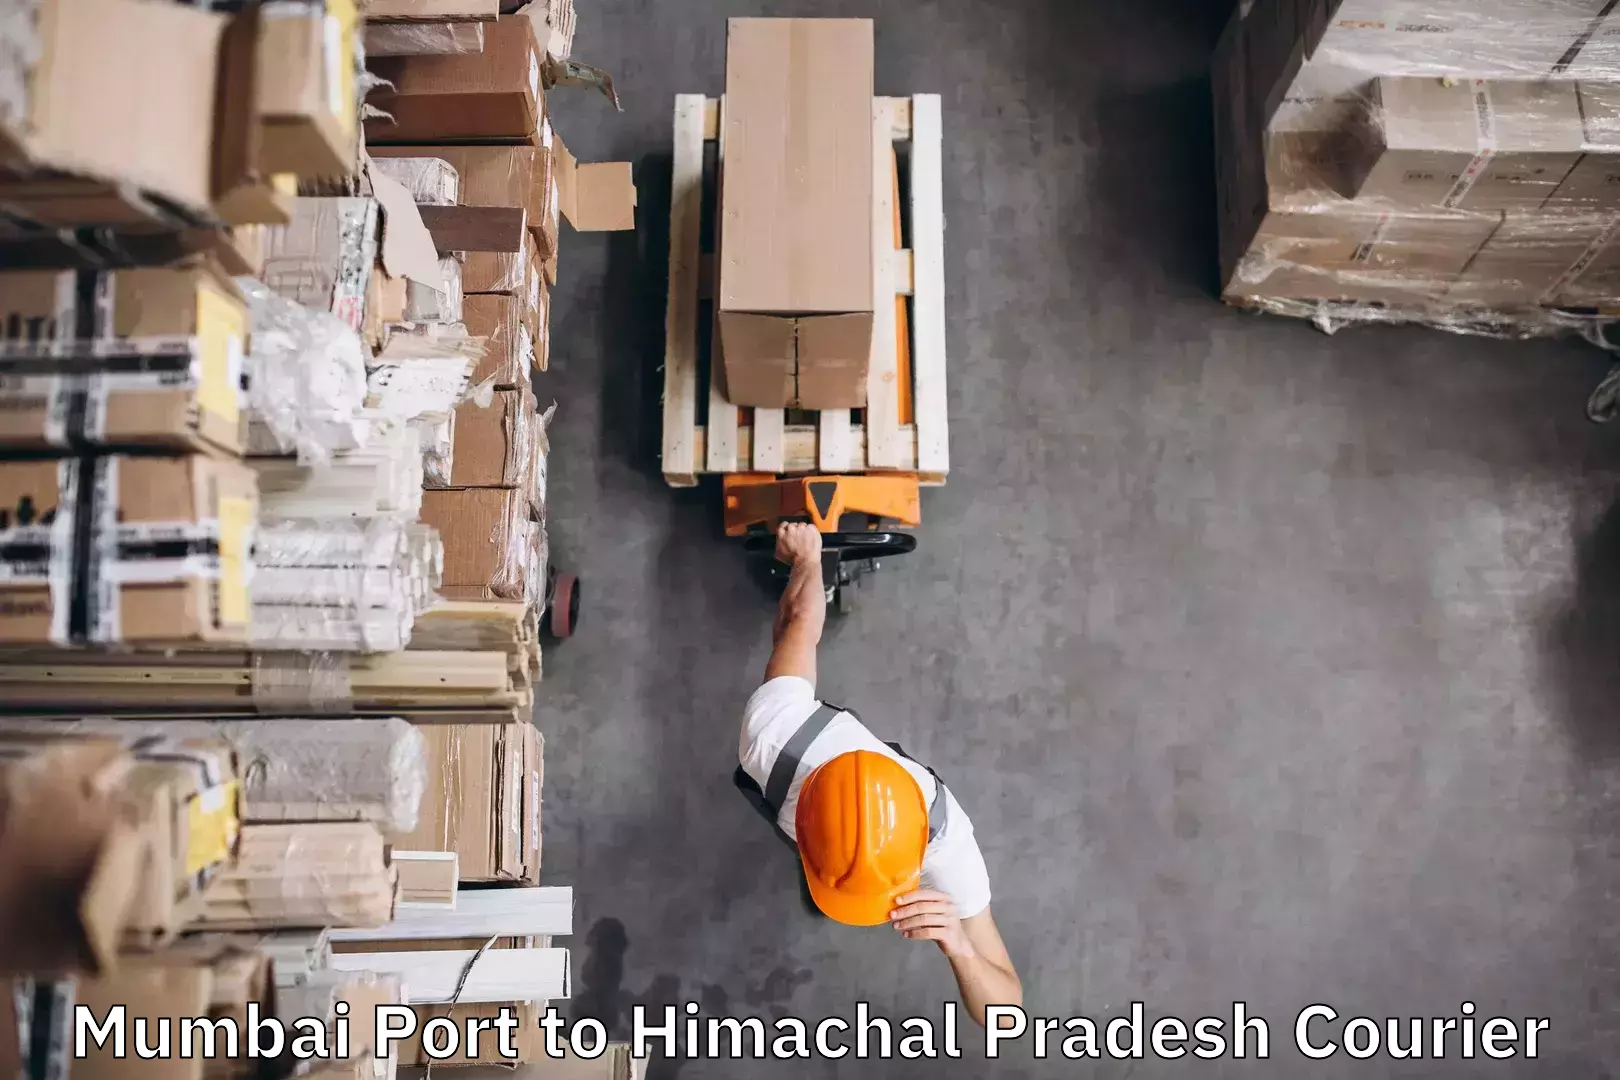 Luggage shipment specialists Mumbai Port to Nirmand